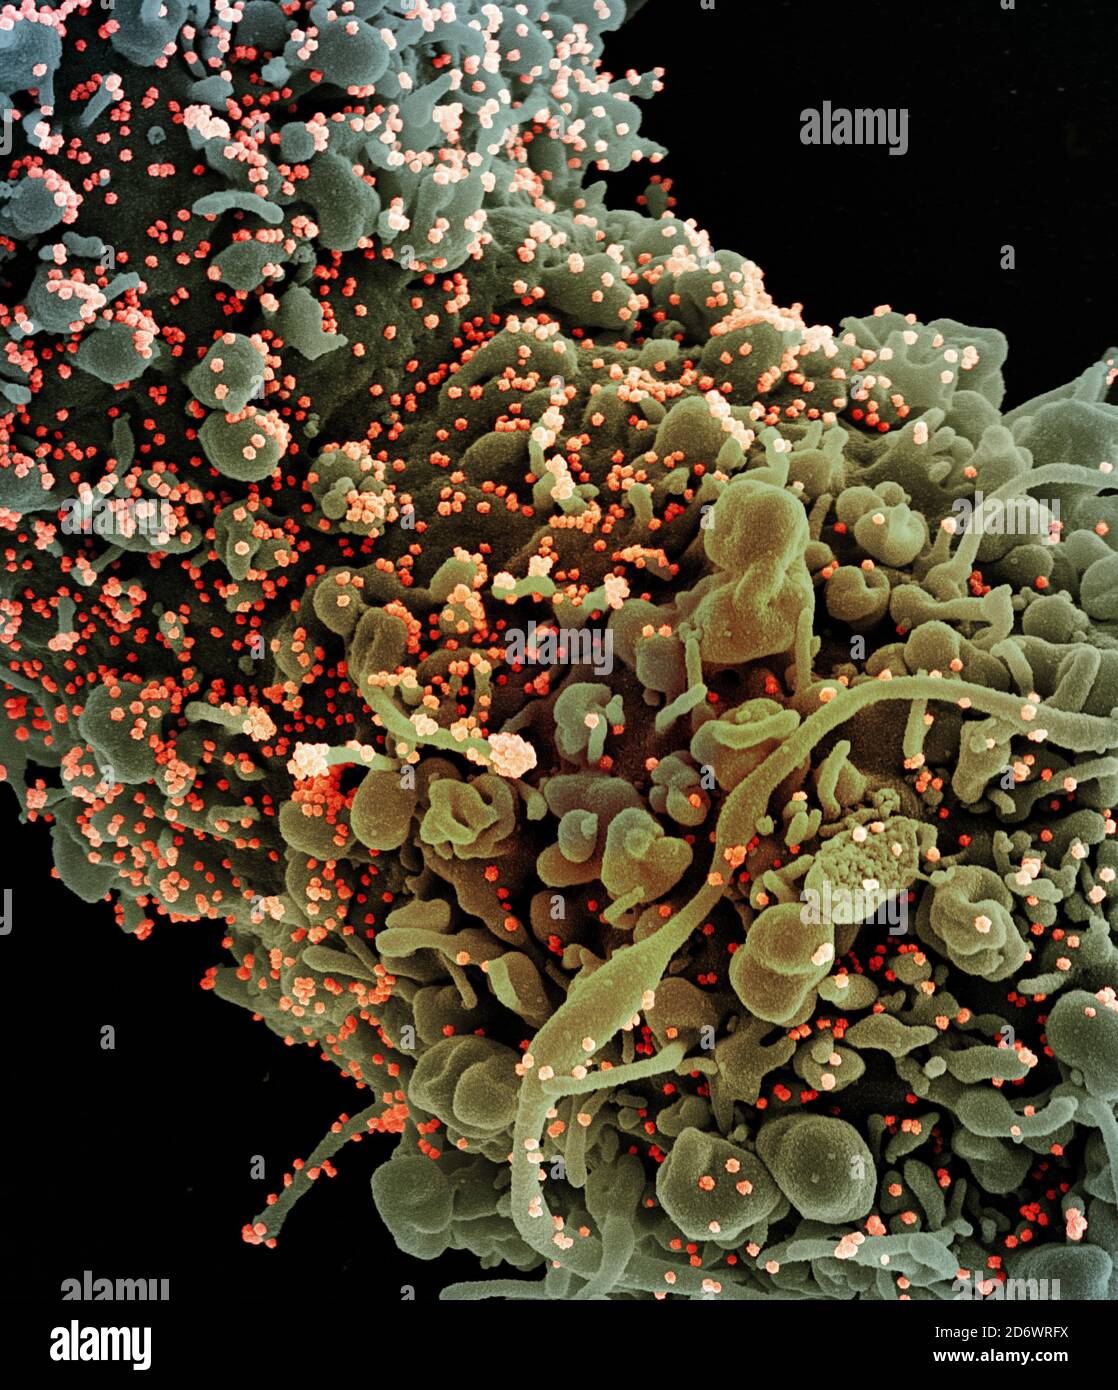 Micrografía electrónica de barrido coloreada de una célula que muestra signos morfológicos de apoptosis, infectada con partículas del virus SARS-COV-2 (naranja), aislada Foto de stock